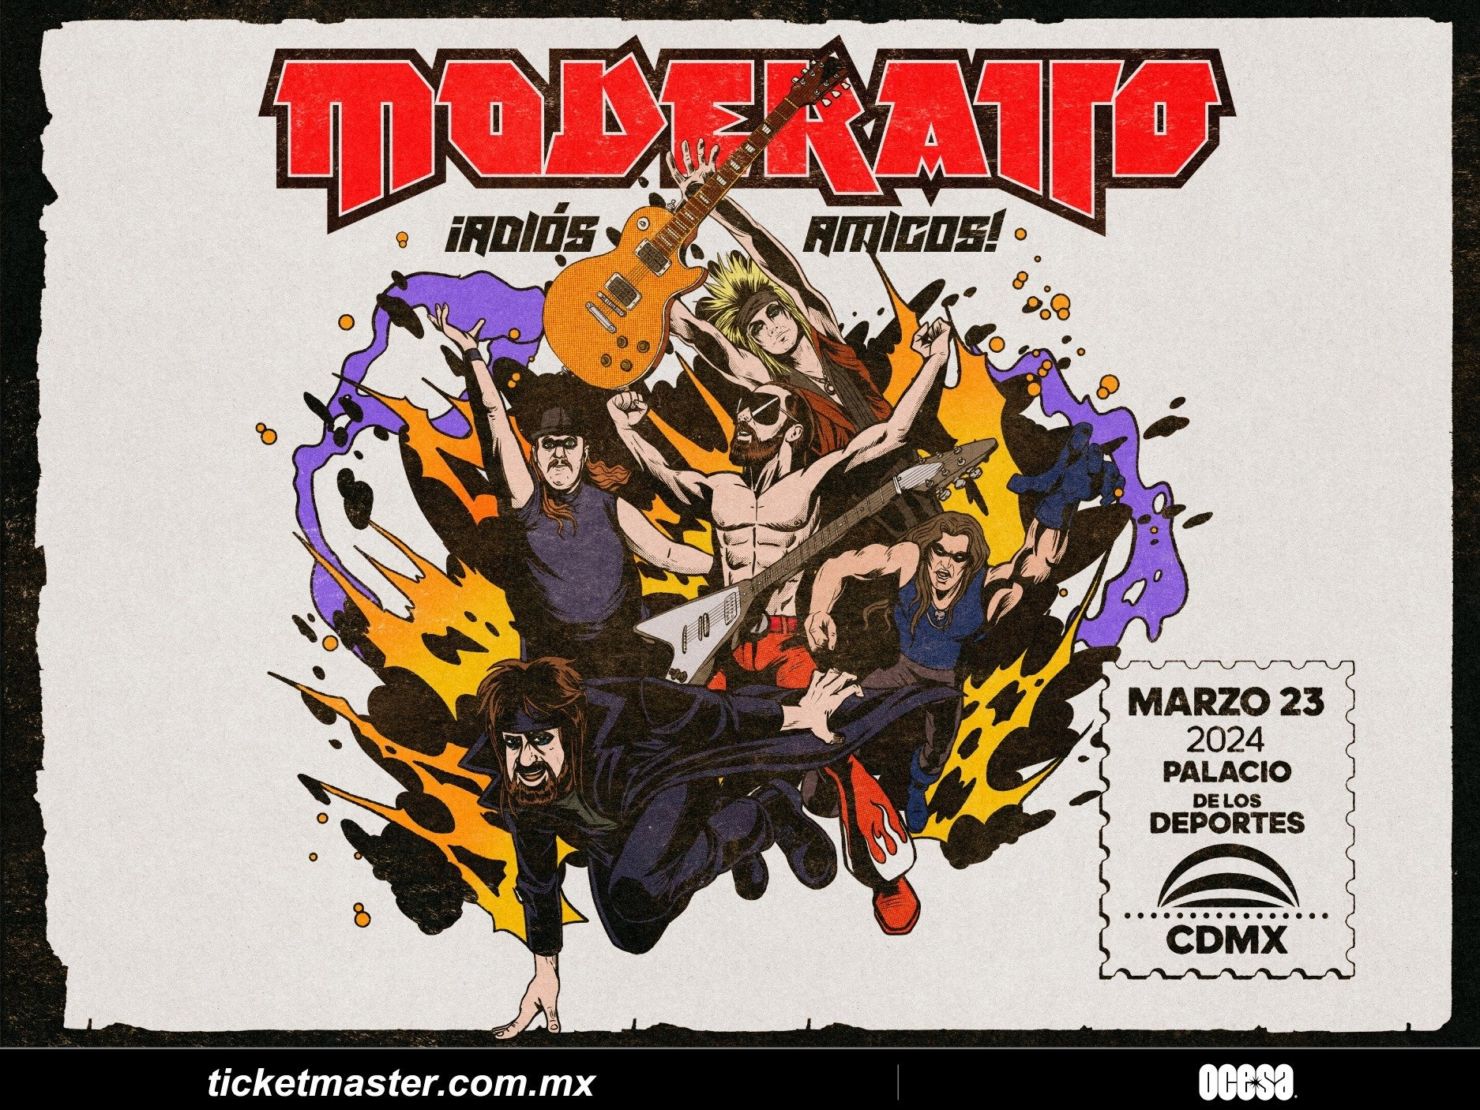 Moderatto anuncia su último concierto en la CDMX